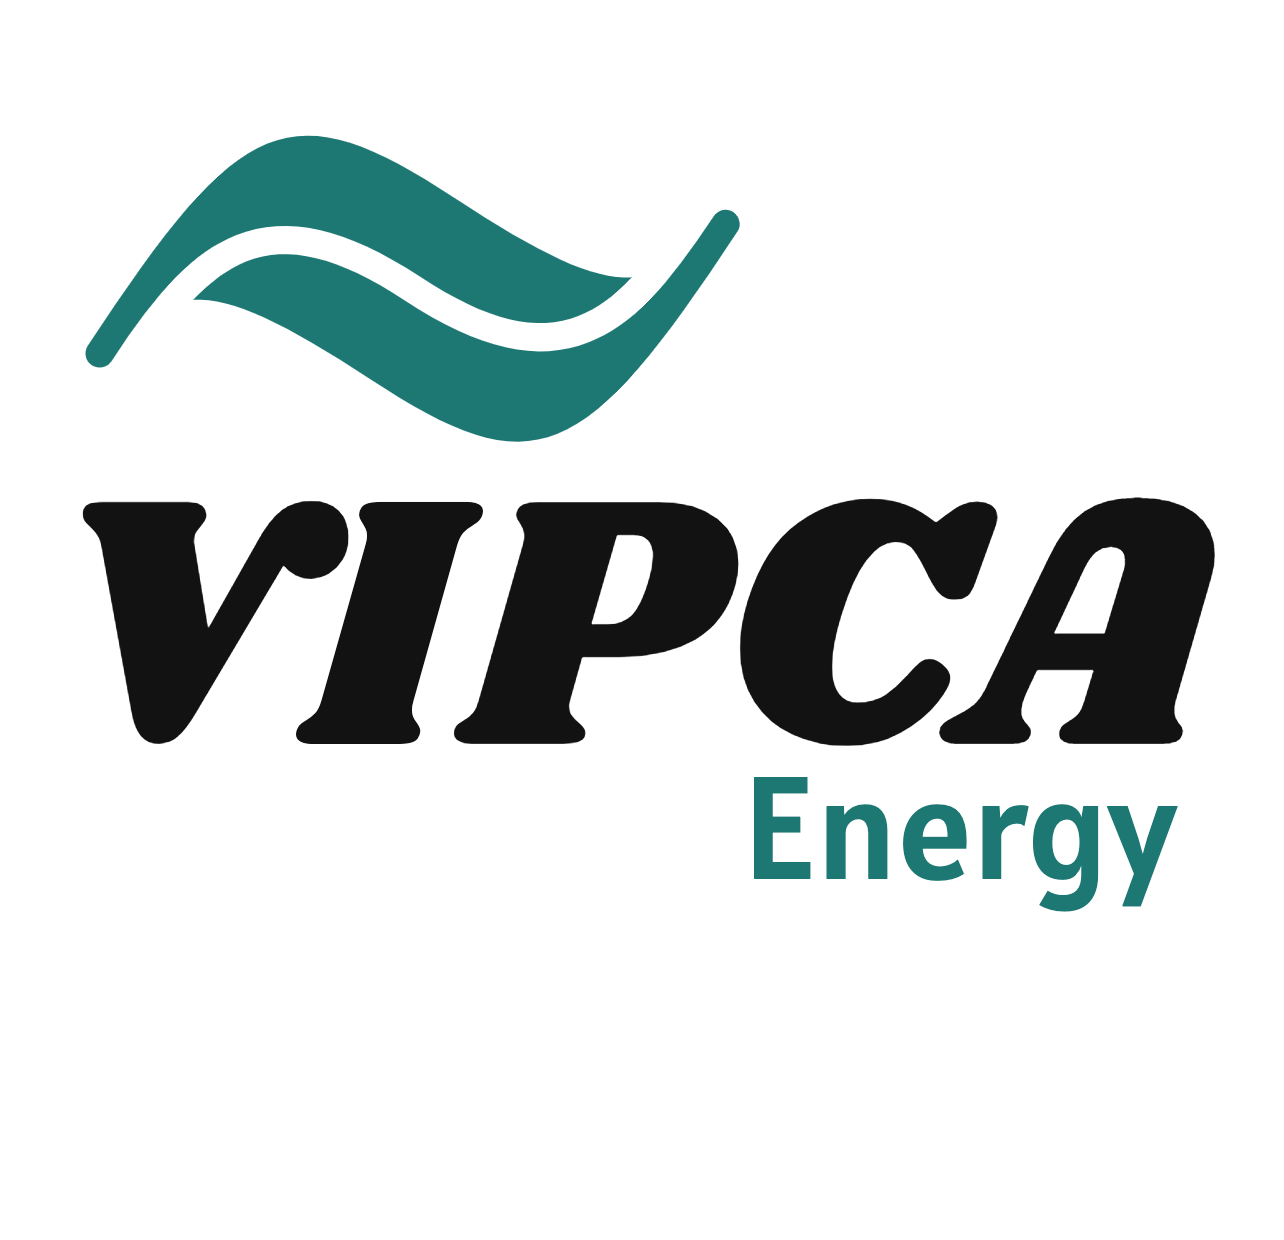 VIPCA, LLC